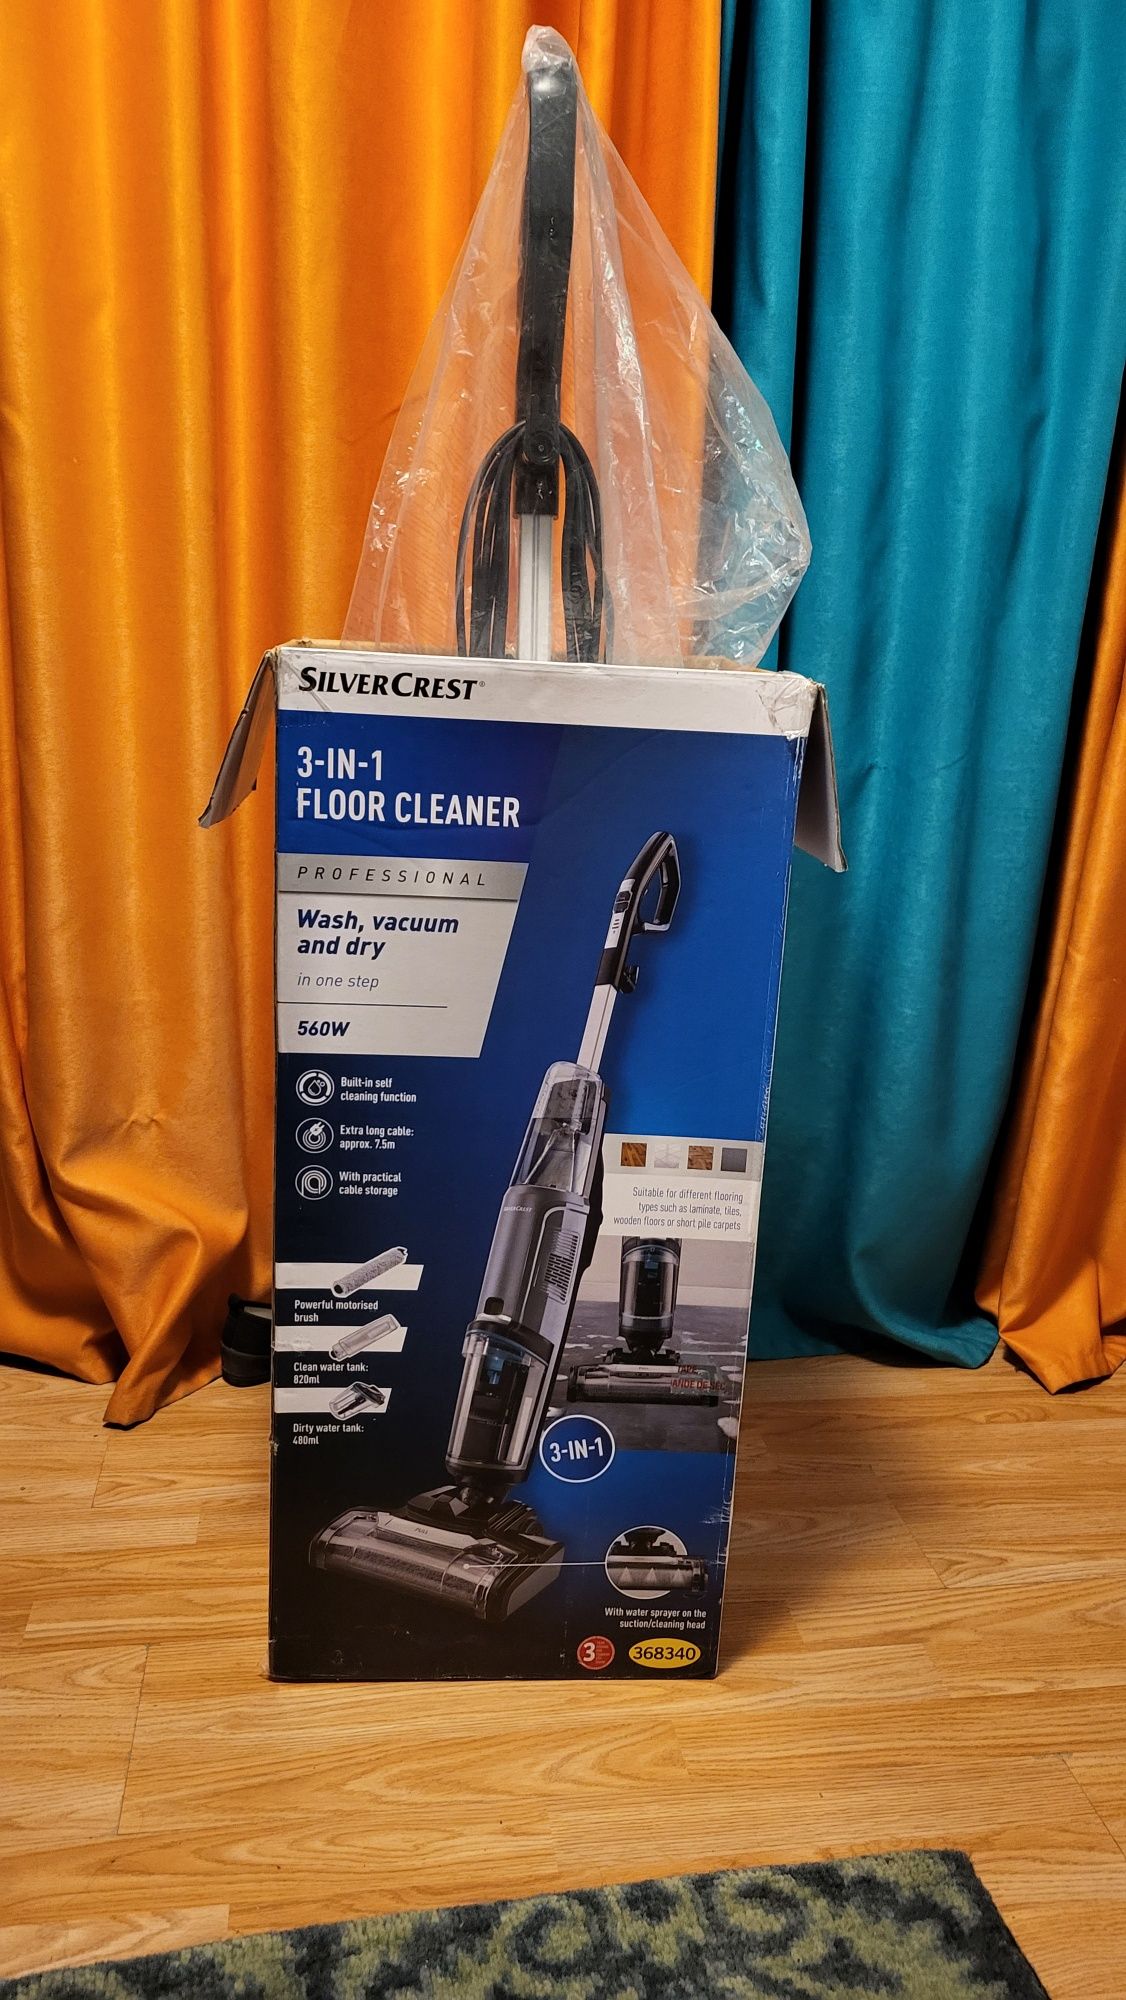 SilverCrest 3-IN-1 Floor Cleaner